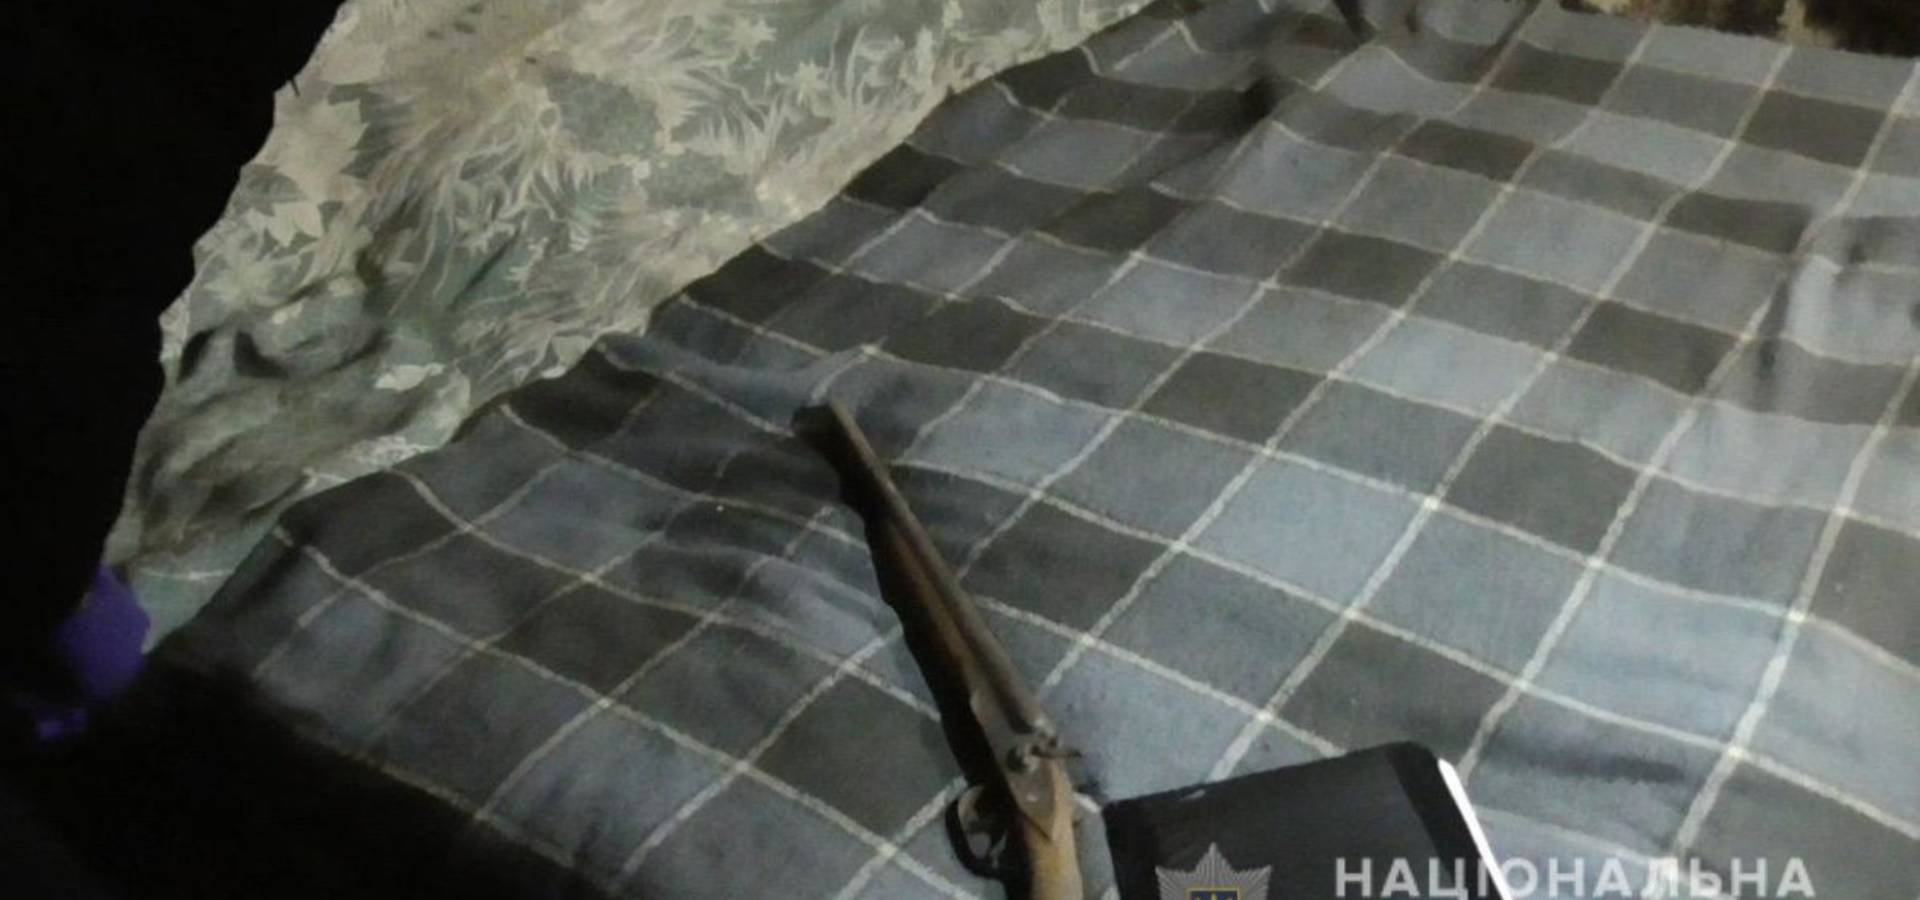 Обріз мисливської рушниці та набої знайшли у мешканця Уланова на Вінниччині